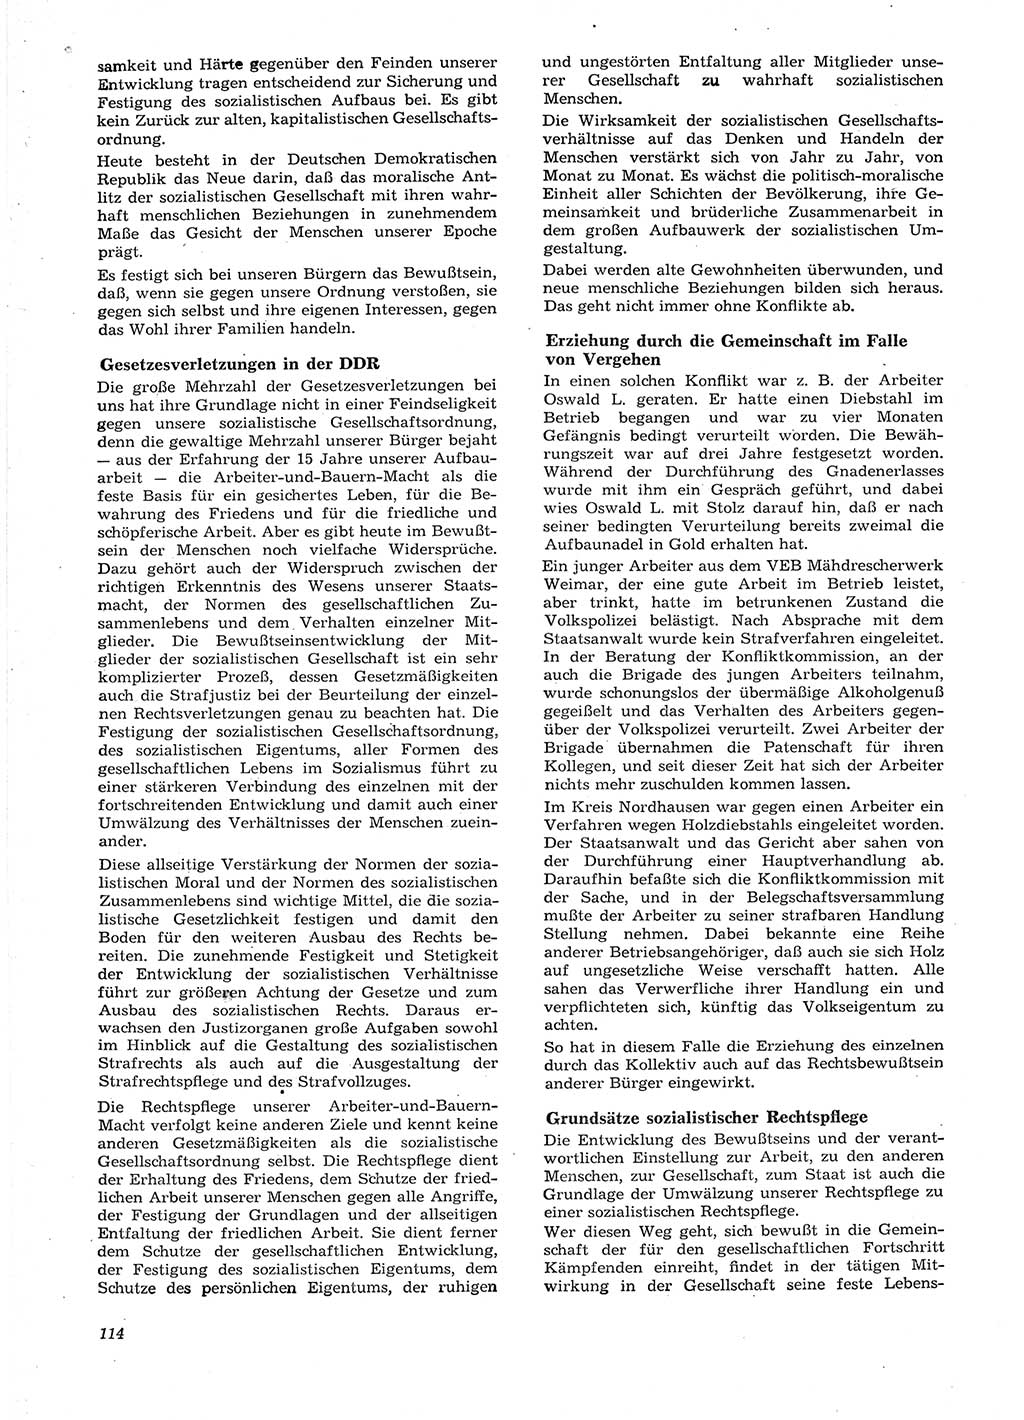 Neue Justiz (NJ), Zeitschrift für Recht und Rechtswissenschaft [Deutsche Demokratische Republik (DDR)], 15. Jahrgang 1961, Seite 114 (NJ DDR 1961, S. 114)